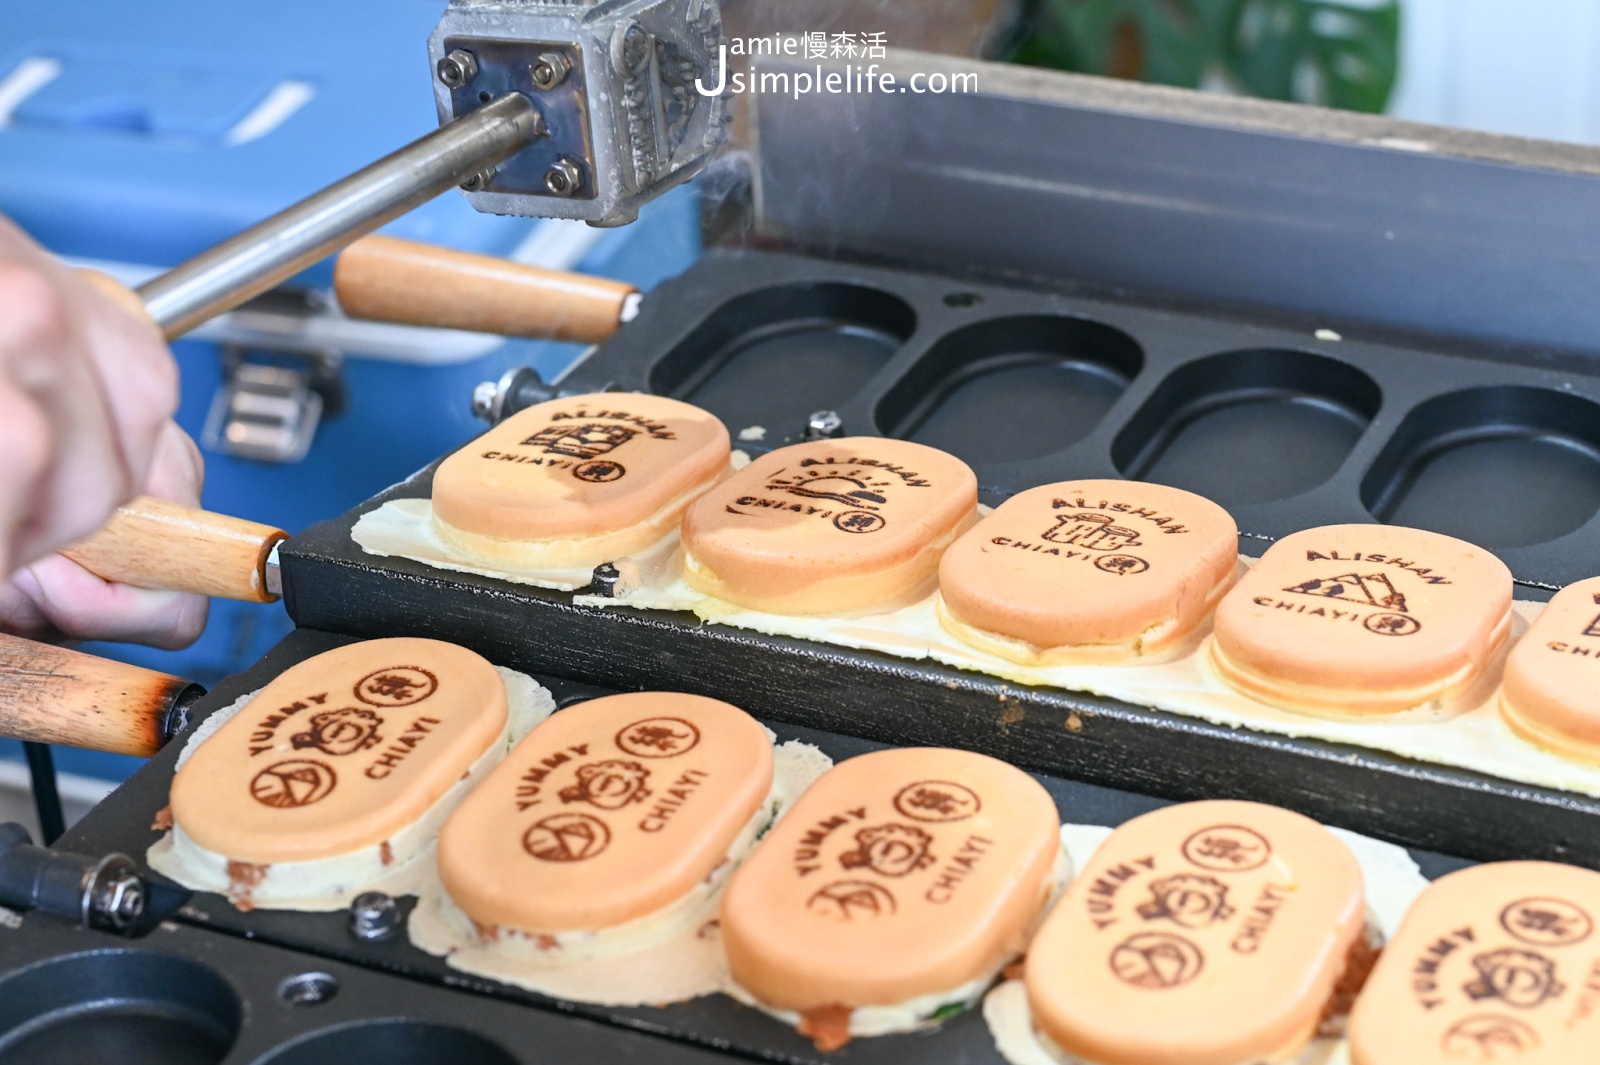 嘉義市純情專売所 純情雞蛋糕 製作烙印過程